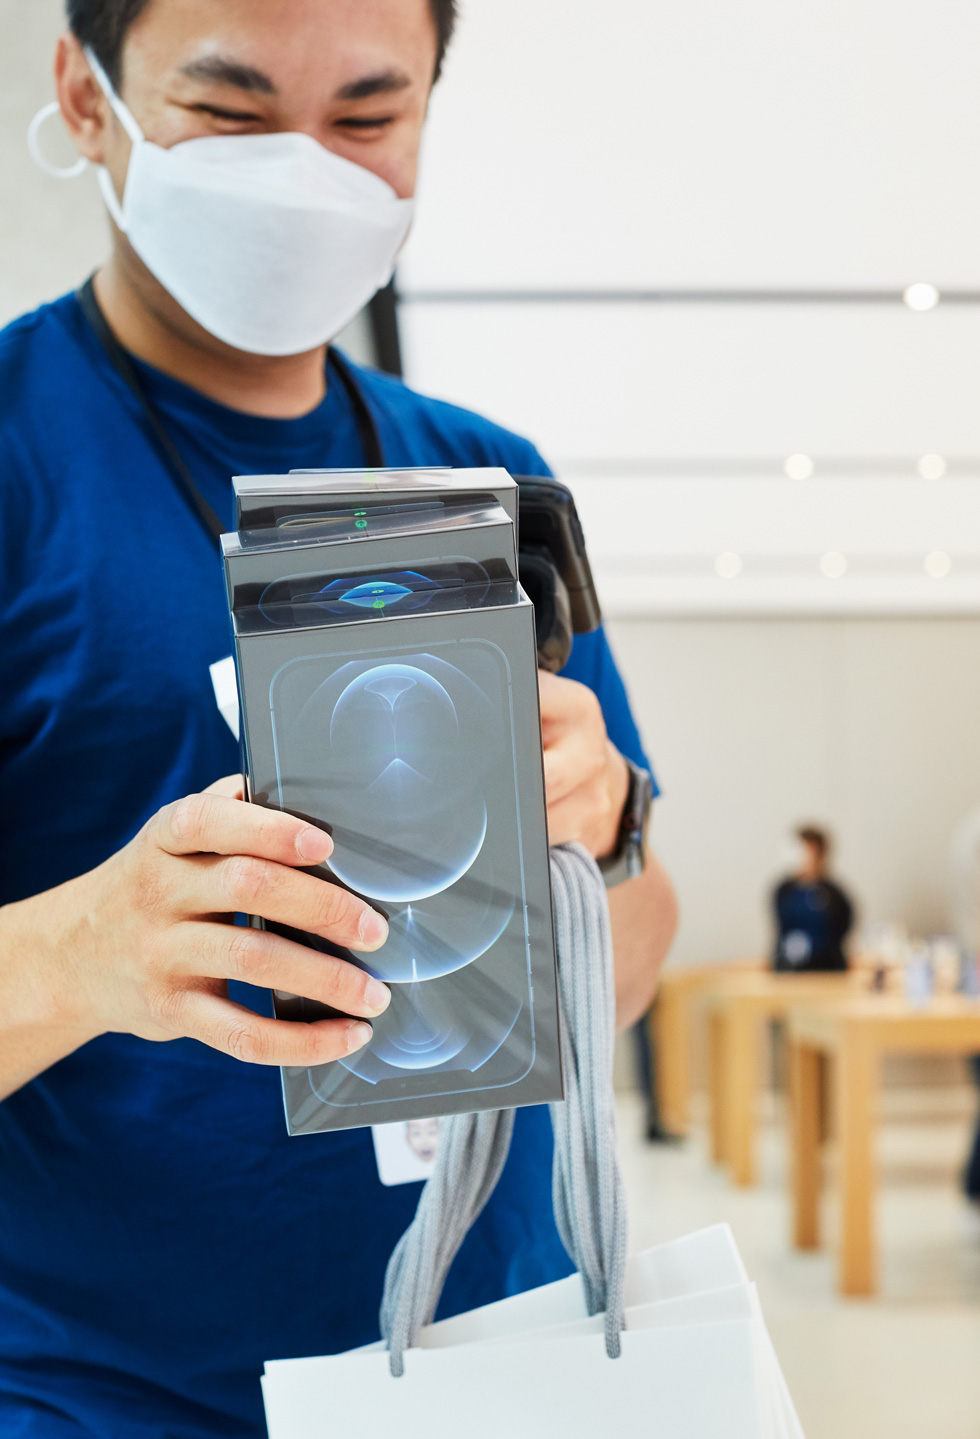 一位 Apple Sydney 零售店团队成员正在扫描 iPhone 12 Pro Max 的包装。